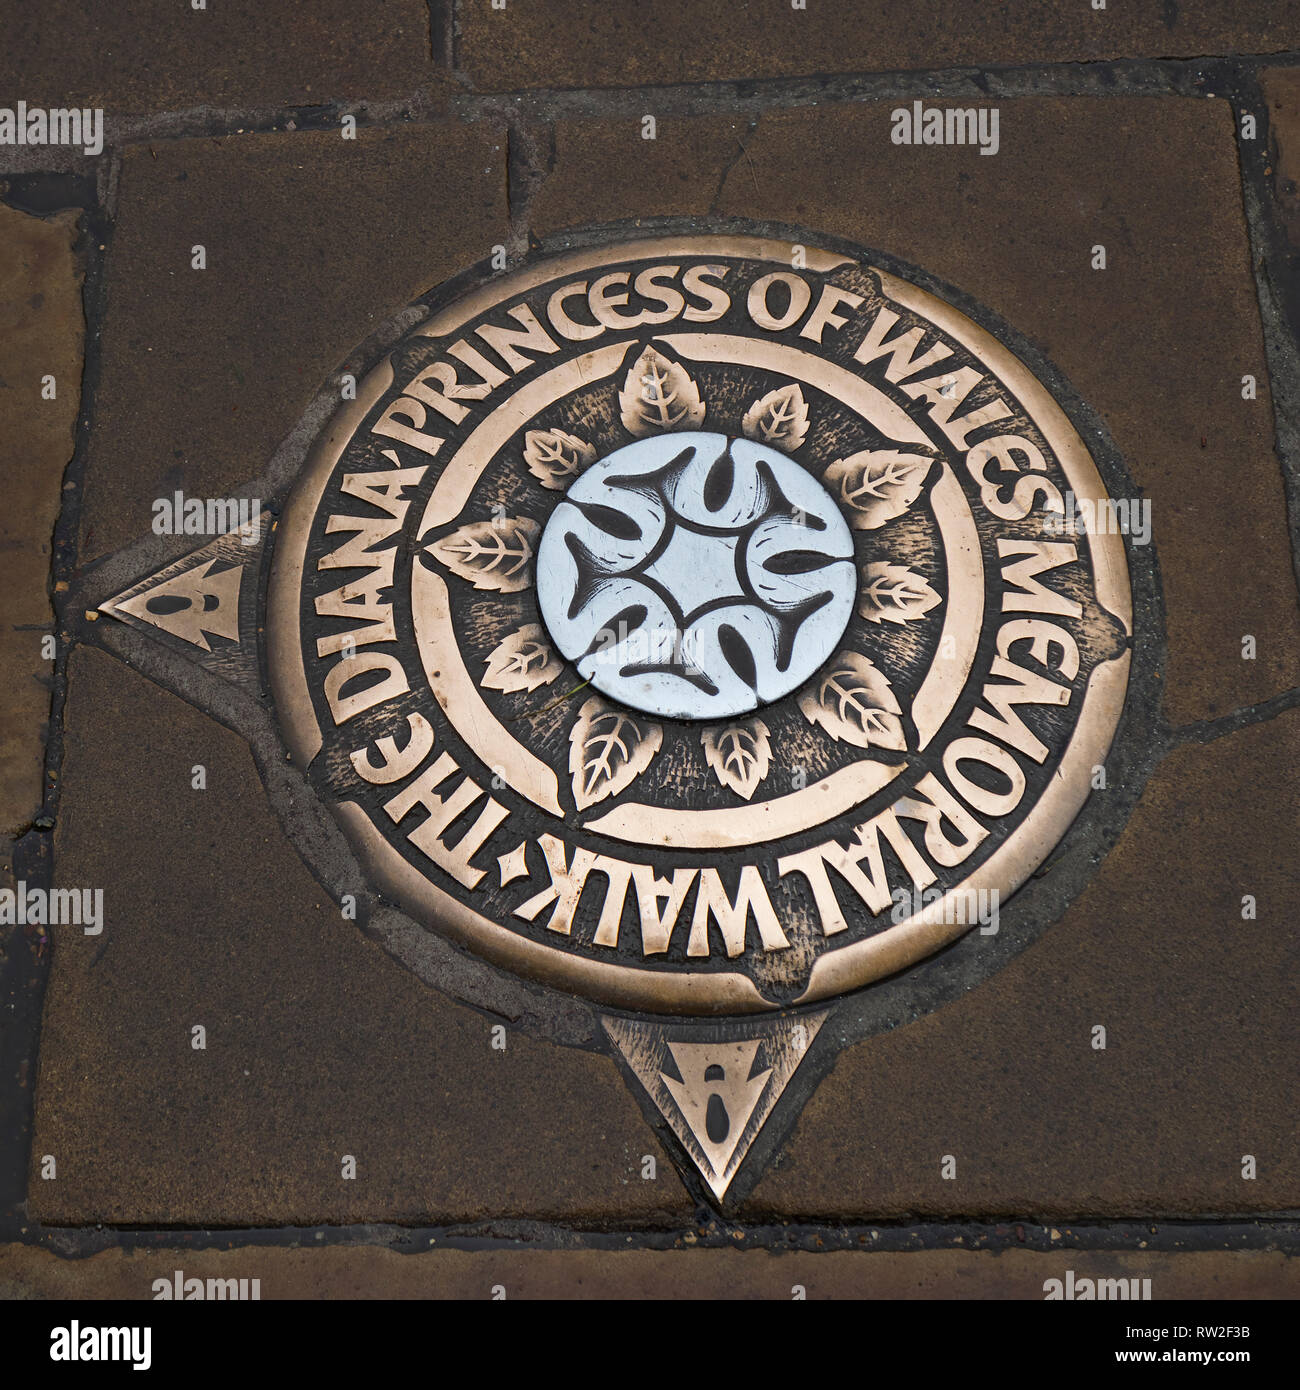 Londres, Angleterre - 28 Février 2019 : Bronze marqueur dans l'allée pour la Princesse Diana Memorial Promenade dans les jardins de Kensington, Londres Banque D'Images